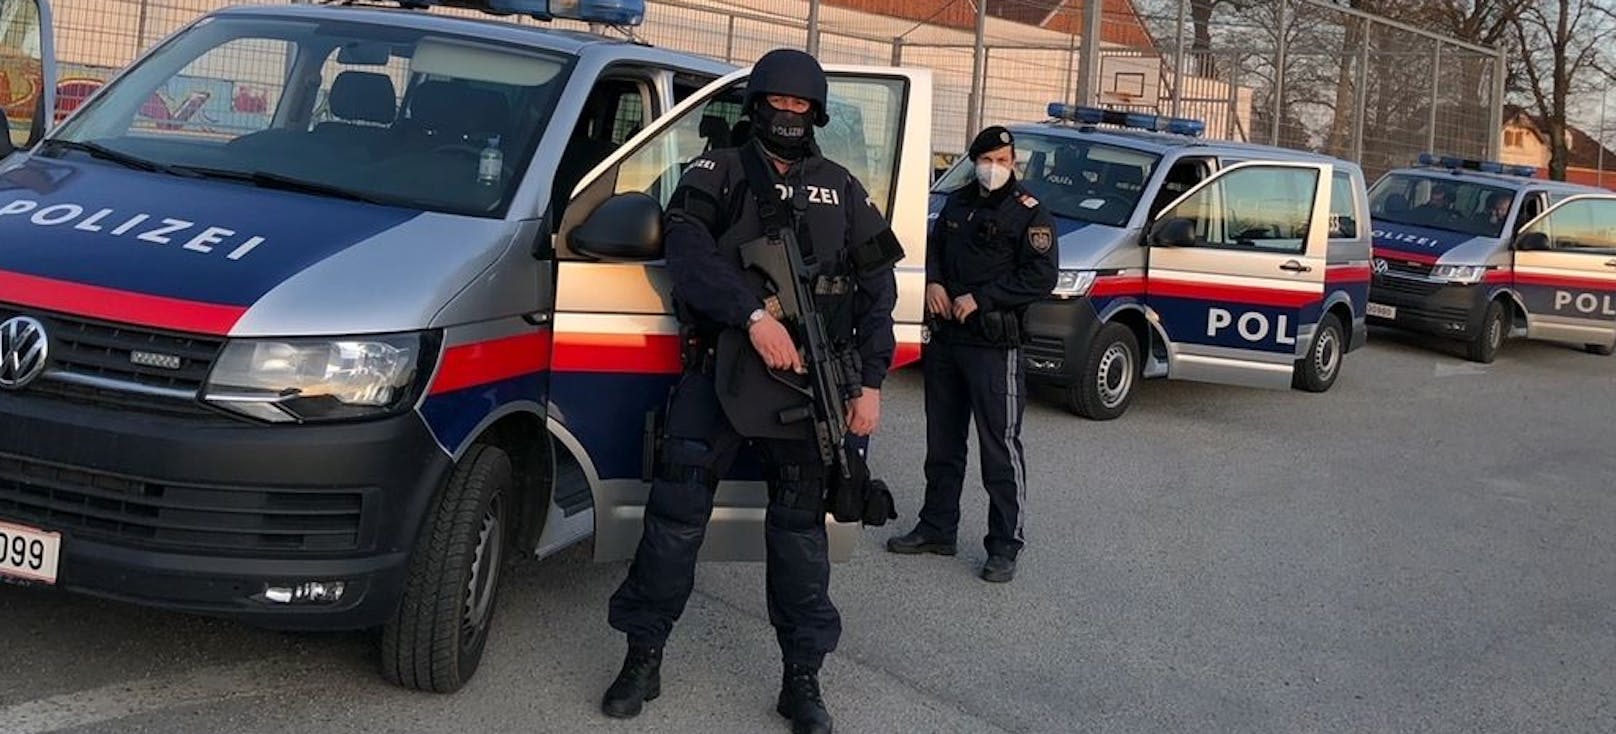 Die Sondereinheit Cobra und die Polizei wurden in Linz-Land alarmiert, weil ein Mann mit Gewehren hantierte. (Symbolfoto)